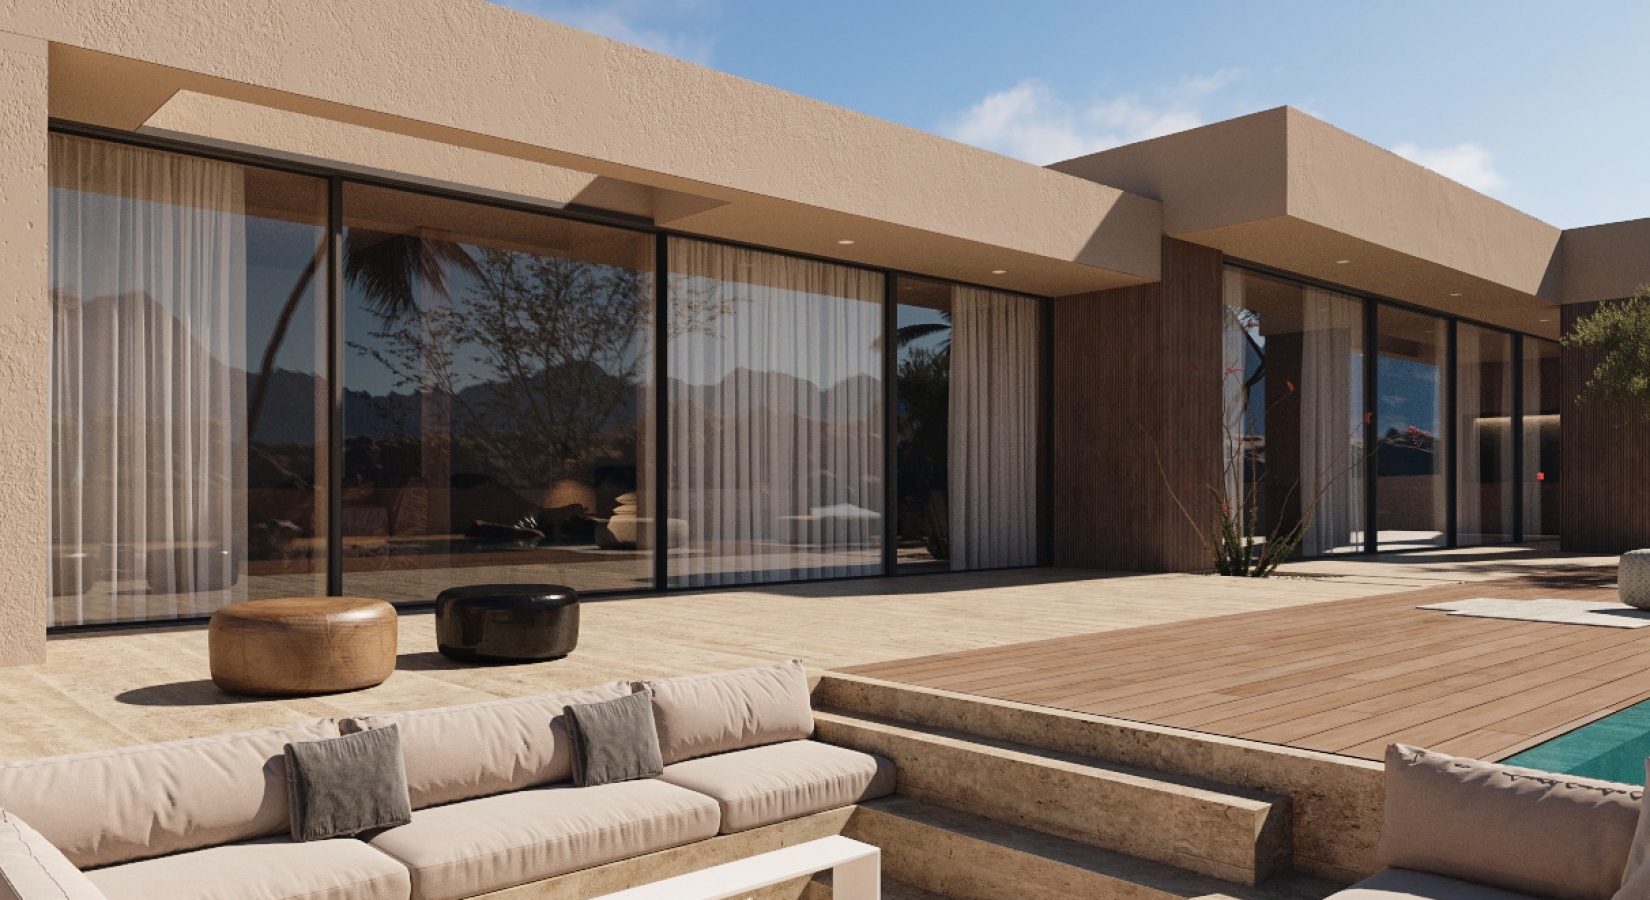 Casa modular de estilo mediterráneo diseñada en 3D por inHAUS. Fachada y zona chill out.